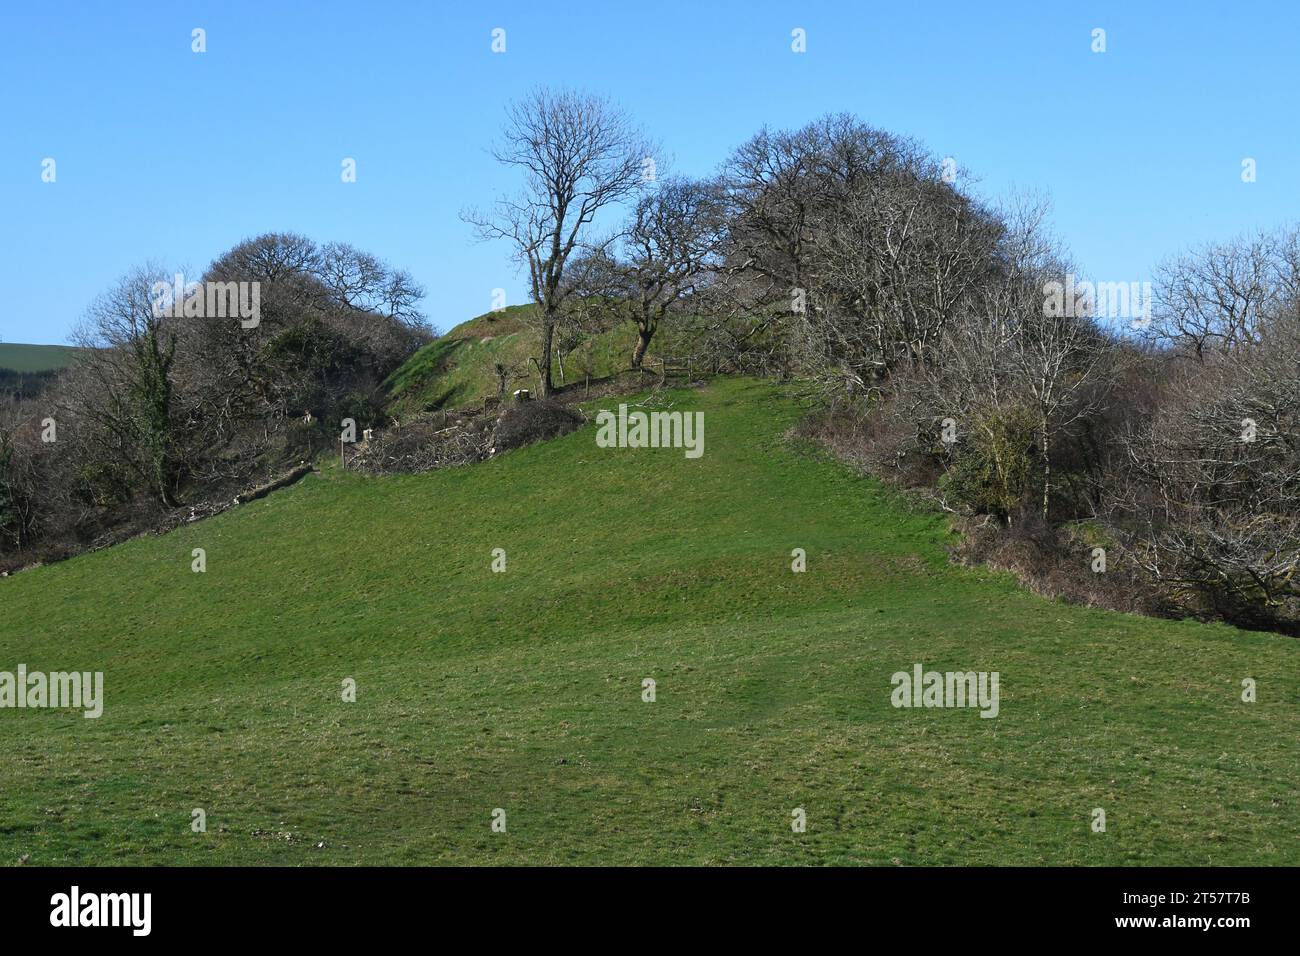 Kilkhampton Castle, auch bekannt als Penstowe Castle, mittelalterliche Festung von Motte und Bailey Bau auf einer von steilen Hängen geschützten Kuppe. Die forti Stockfoto